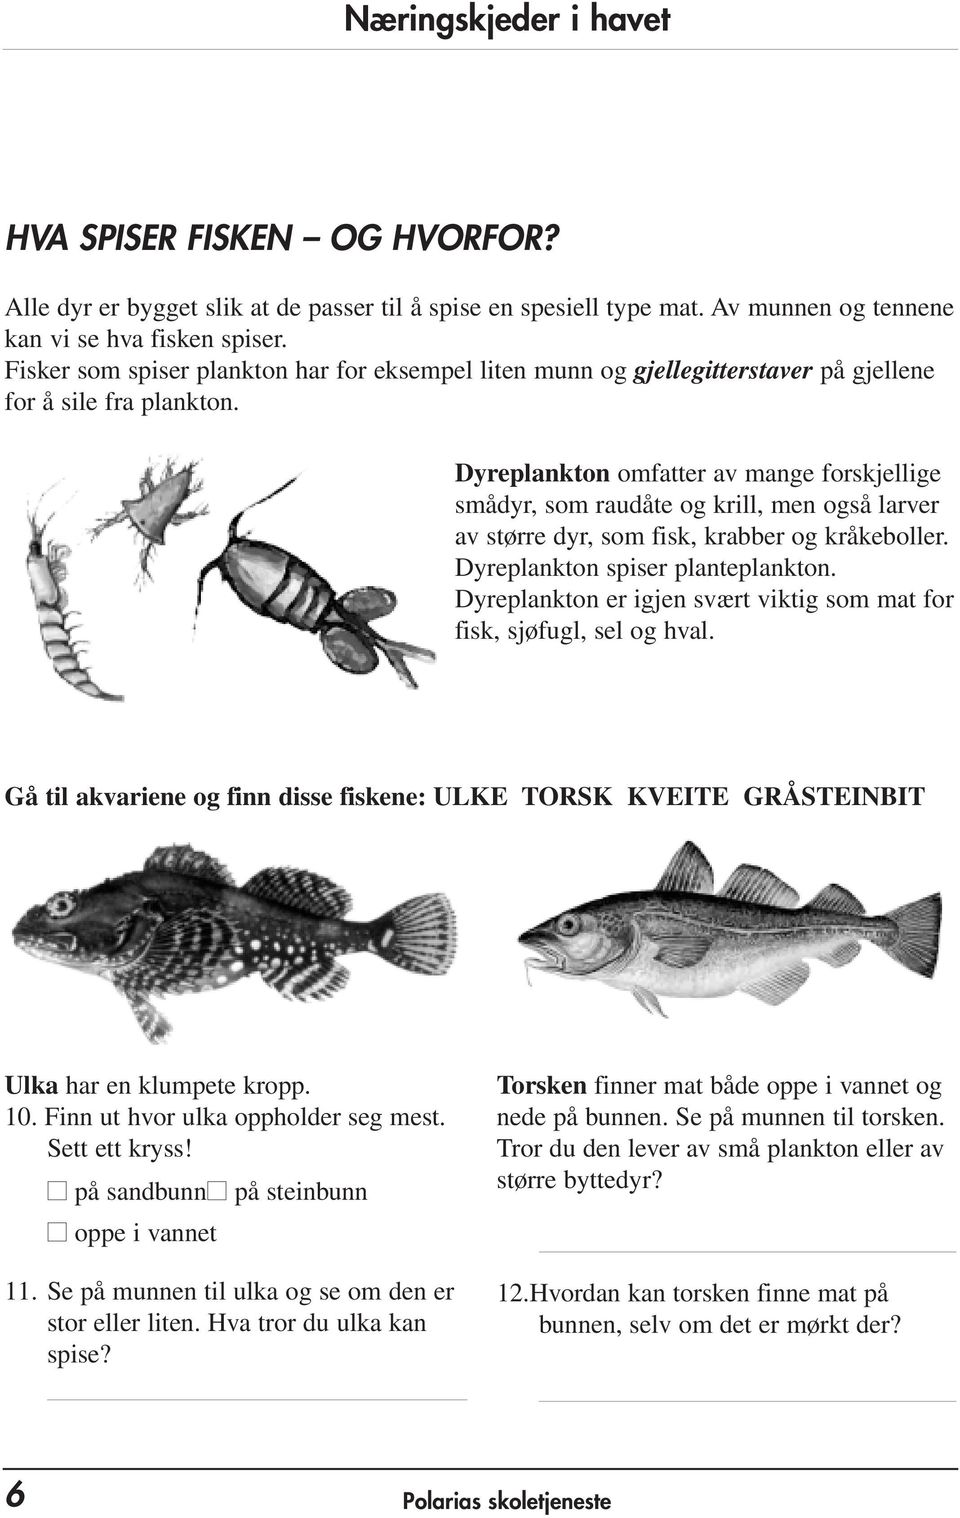 Dyreplankton omfatter av mange forskjellige smådyr, som raudåte og krill, men også larver av større dyr, som fisk, krabber og kråkeboller. Dyreplankton spiser planteplankton.